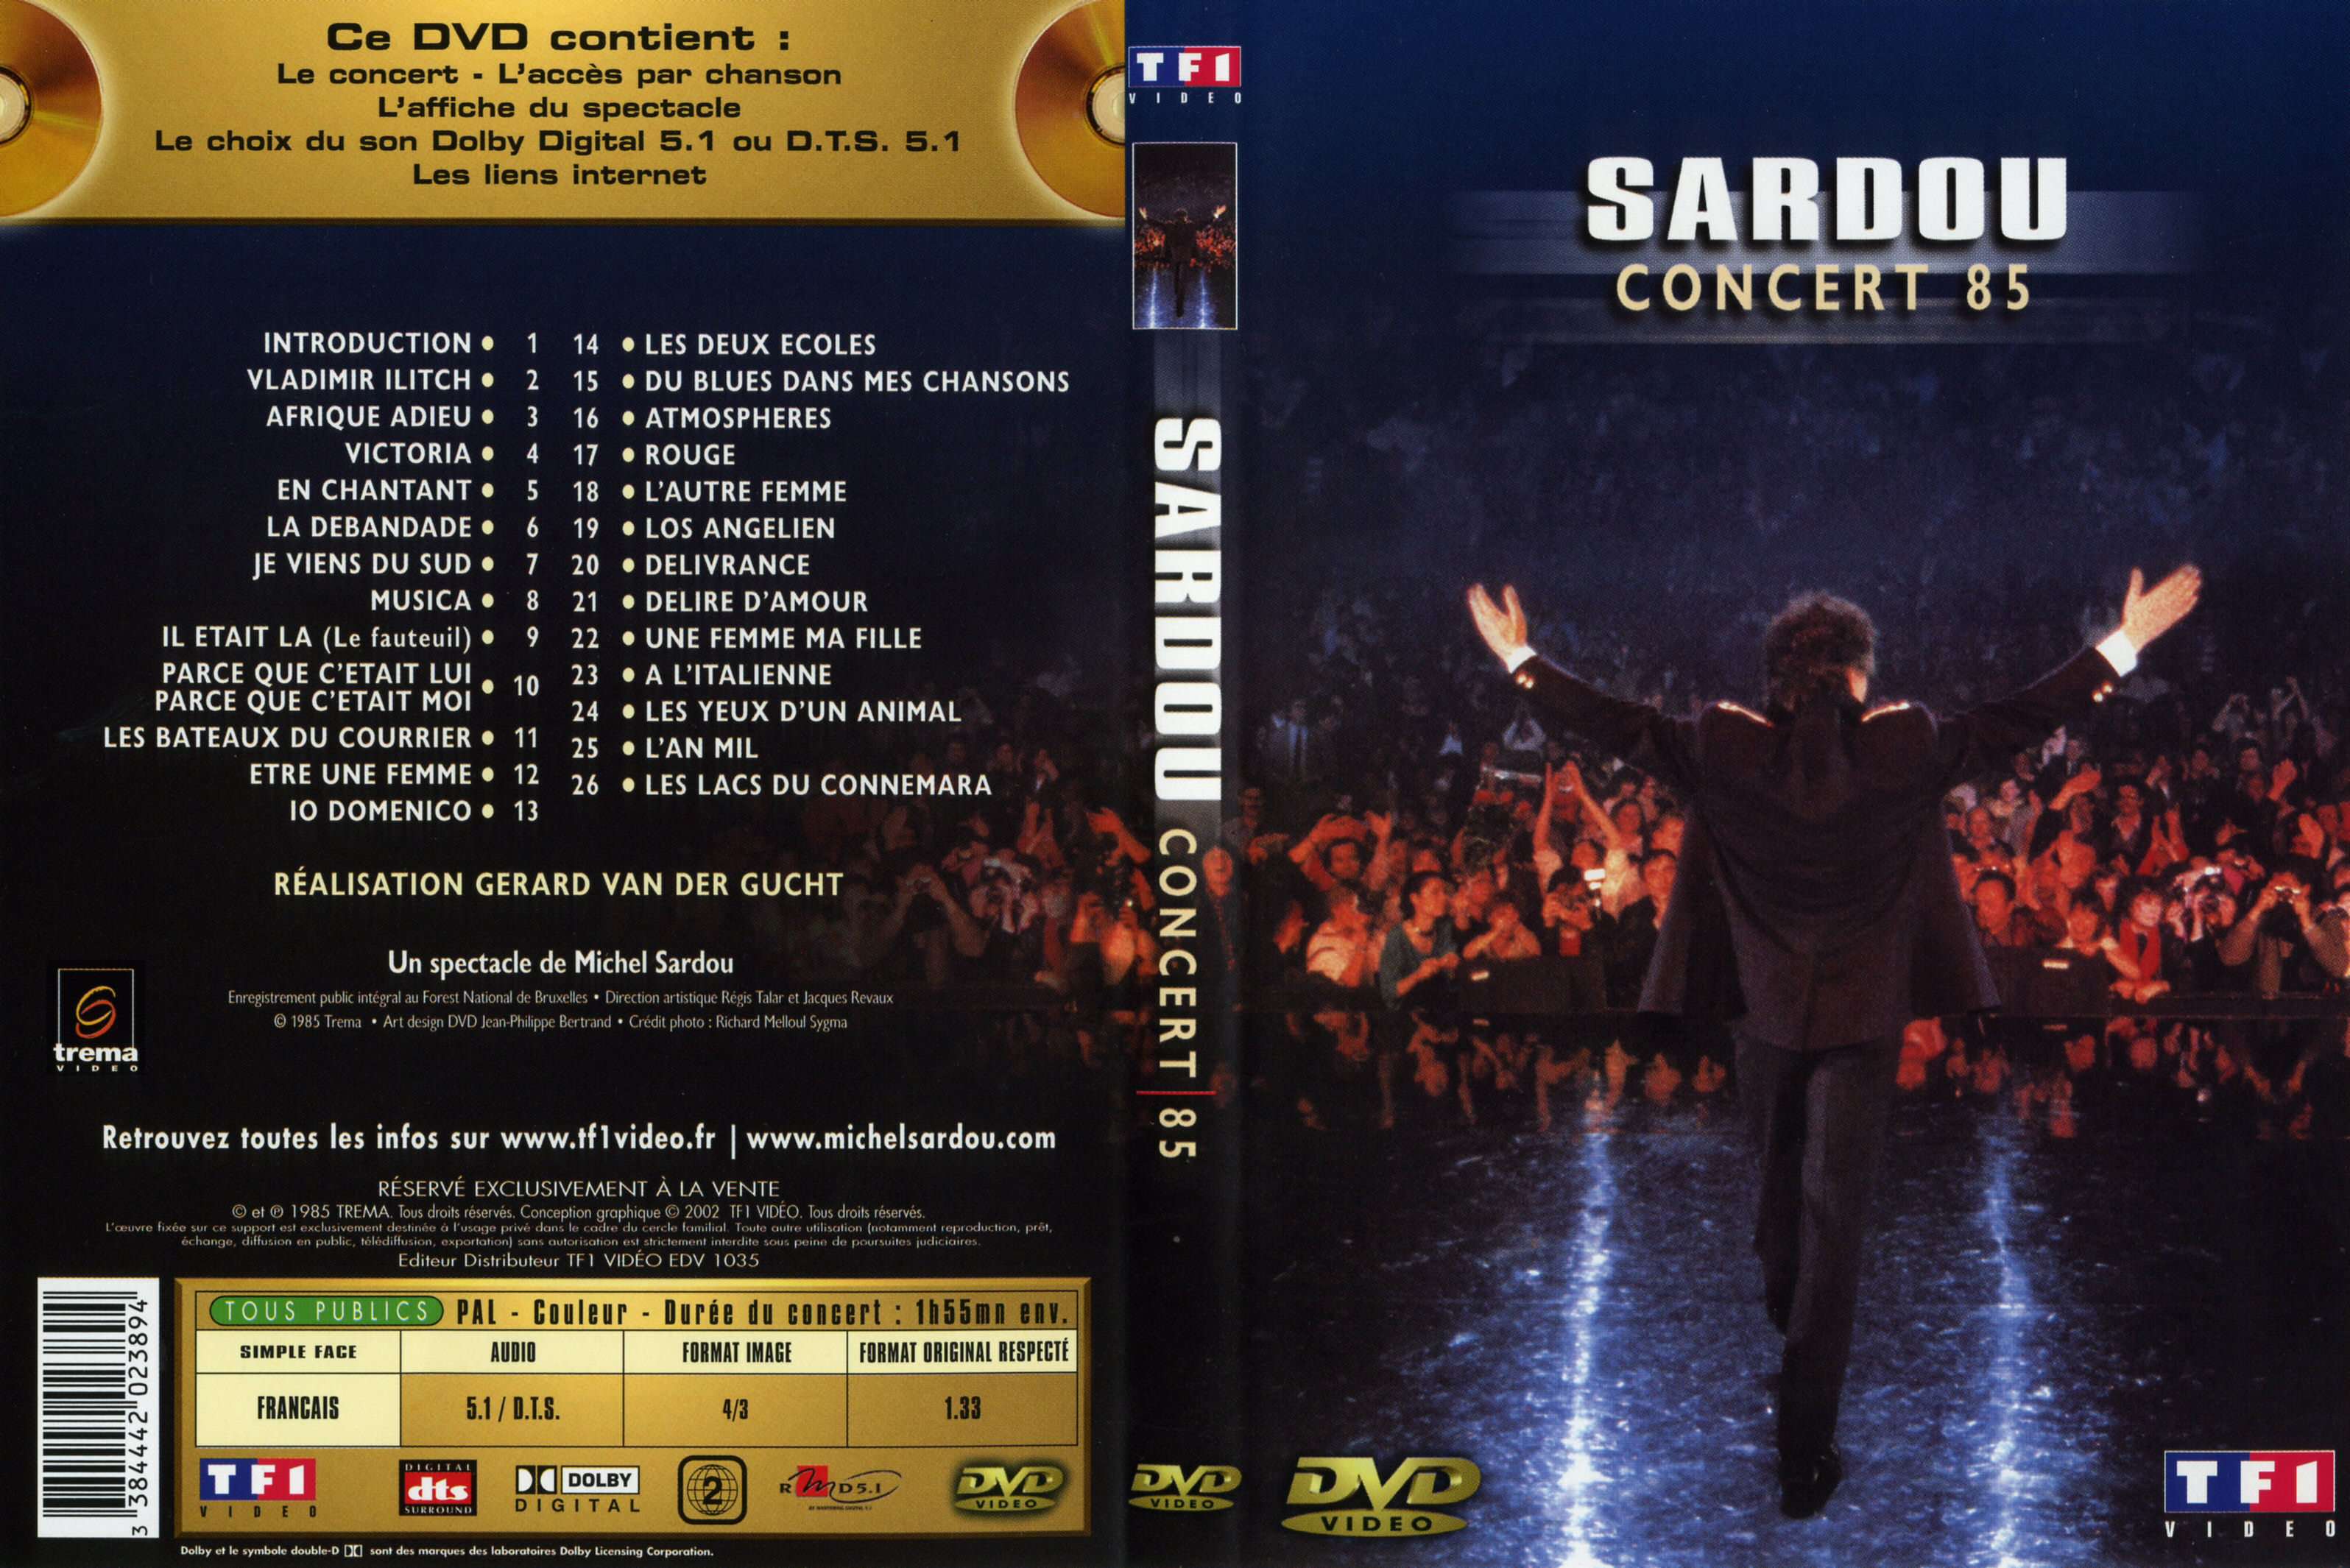 Jaquette DVD Michel Sardou Concert 85